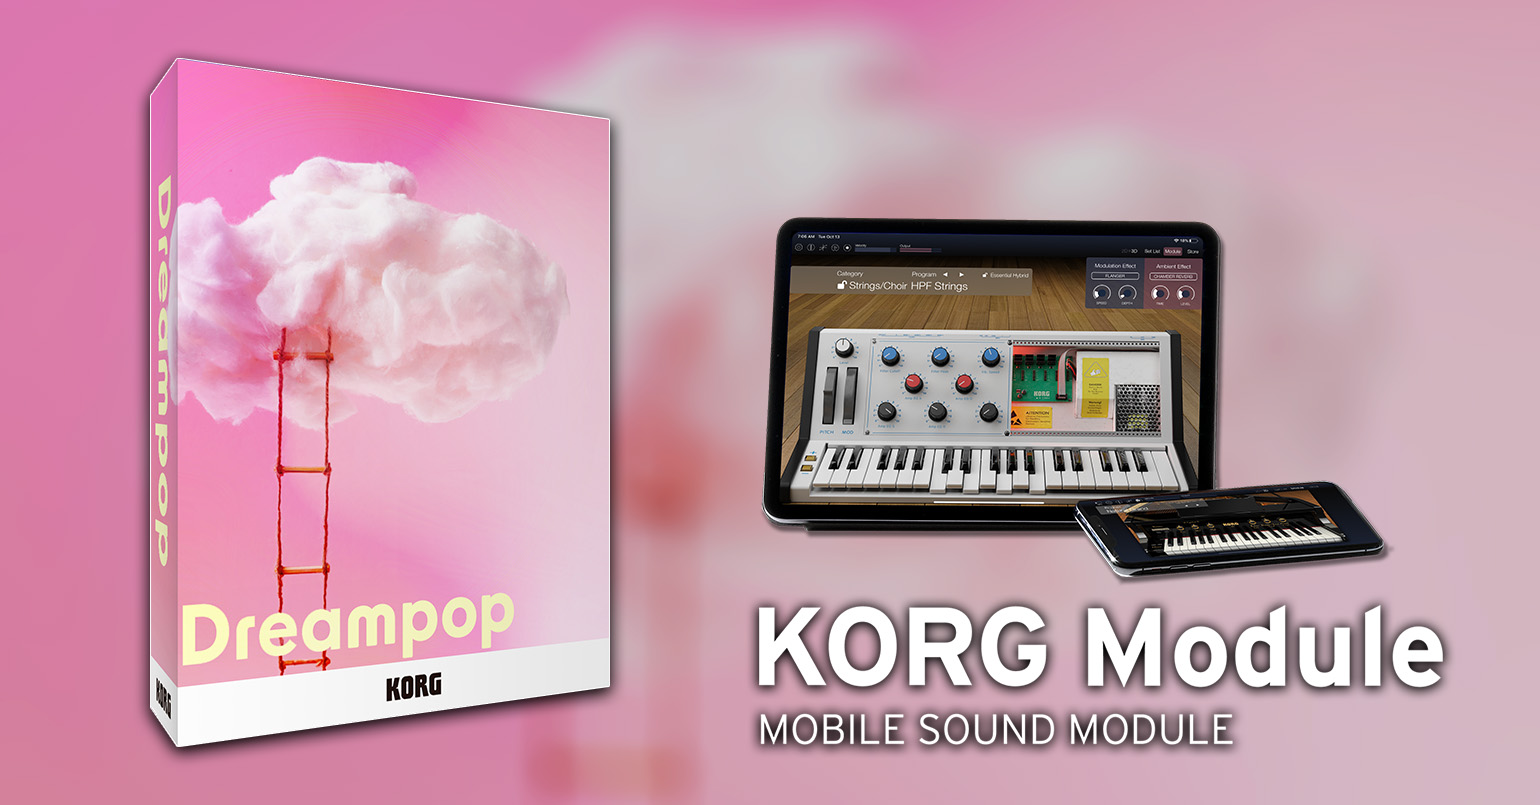 ニュース | Dreampop: KORG Module の新しいエクスパンション・サウンド・パックが登場。ブラックフライデーセールを実施中！ |  KORG (Japan)